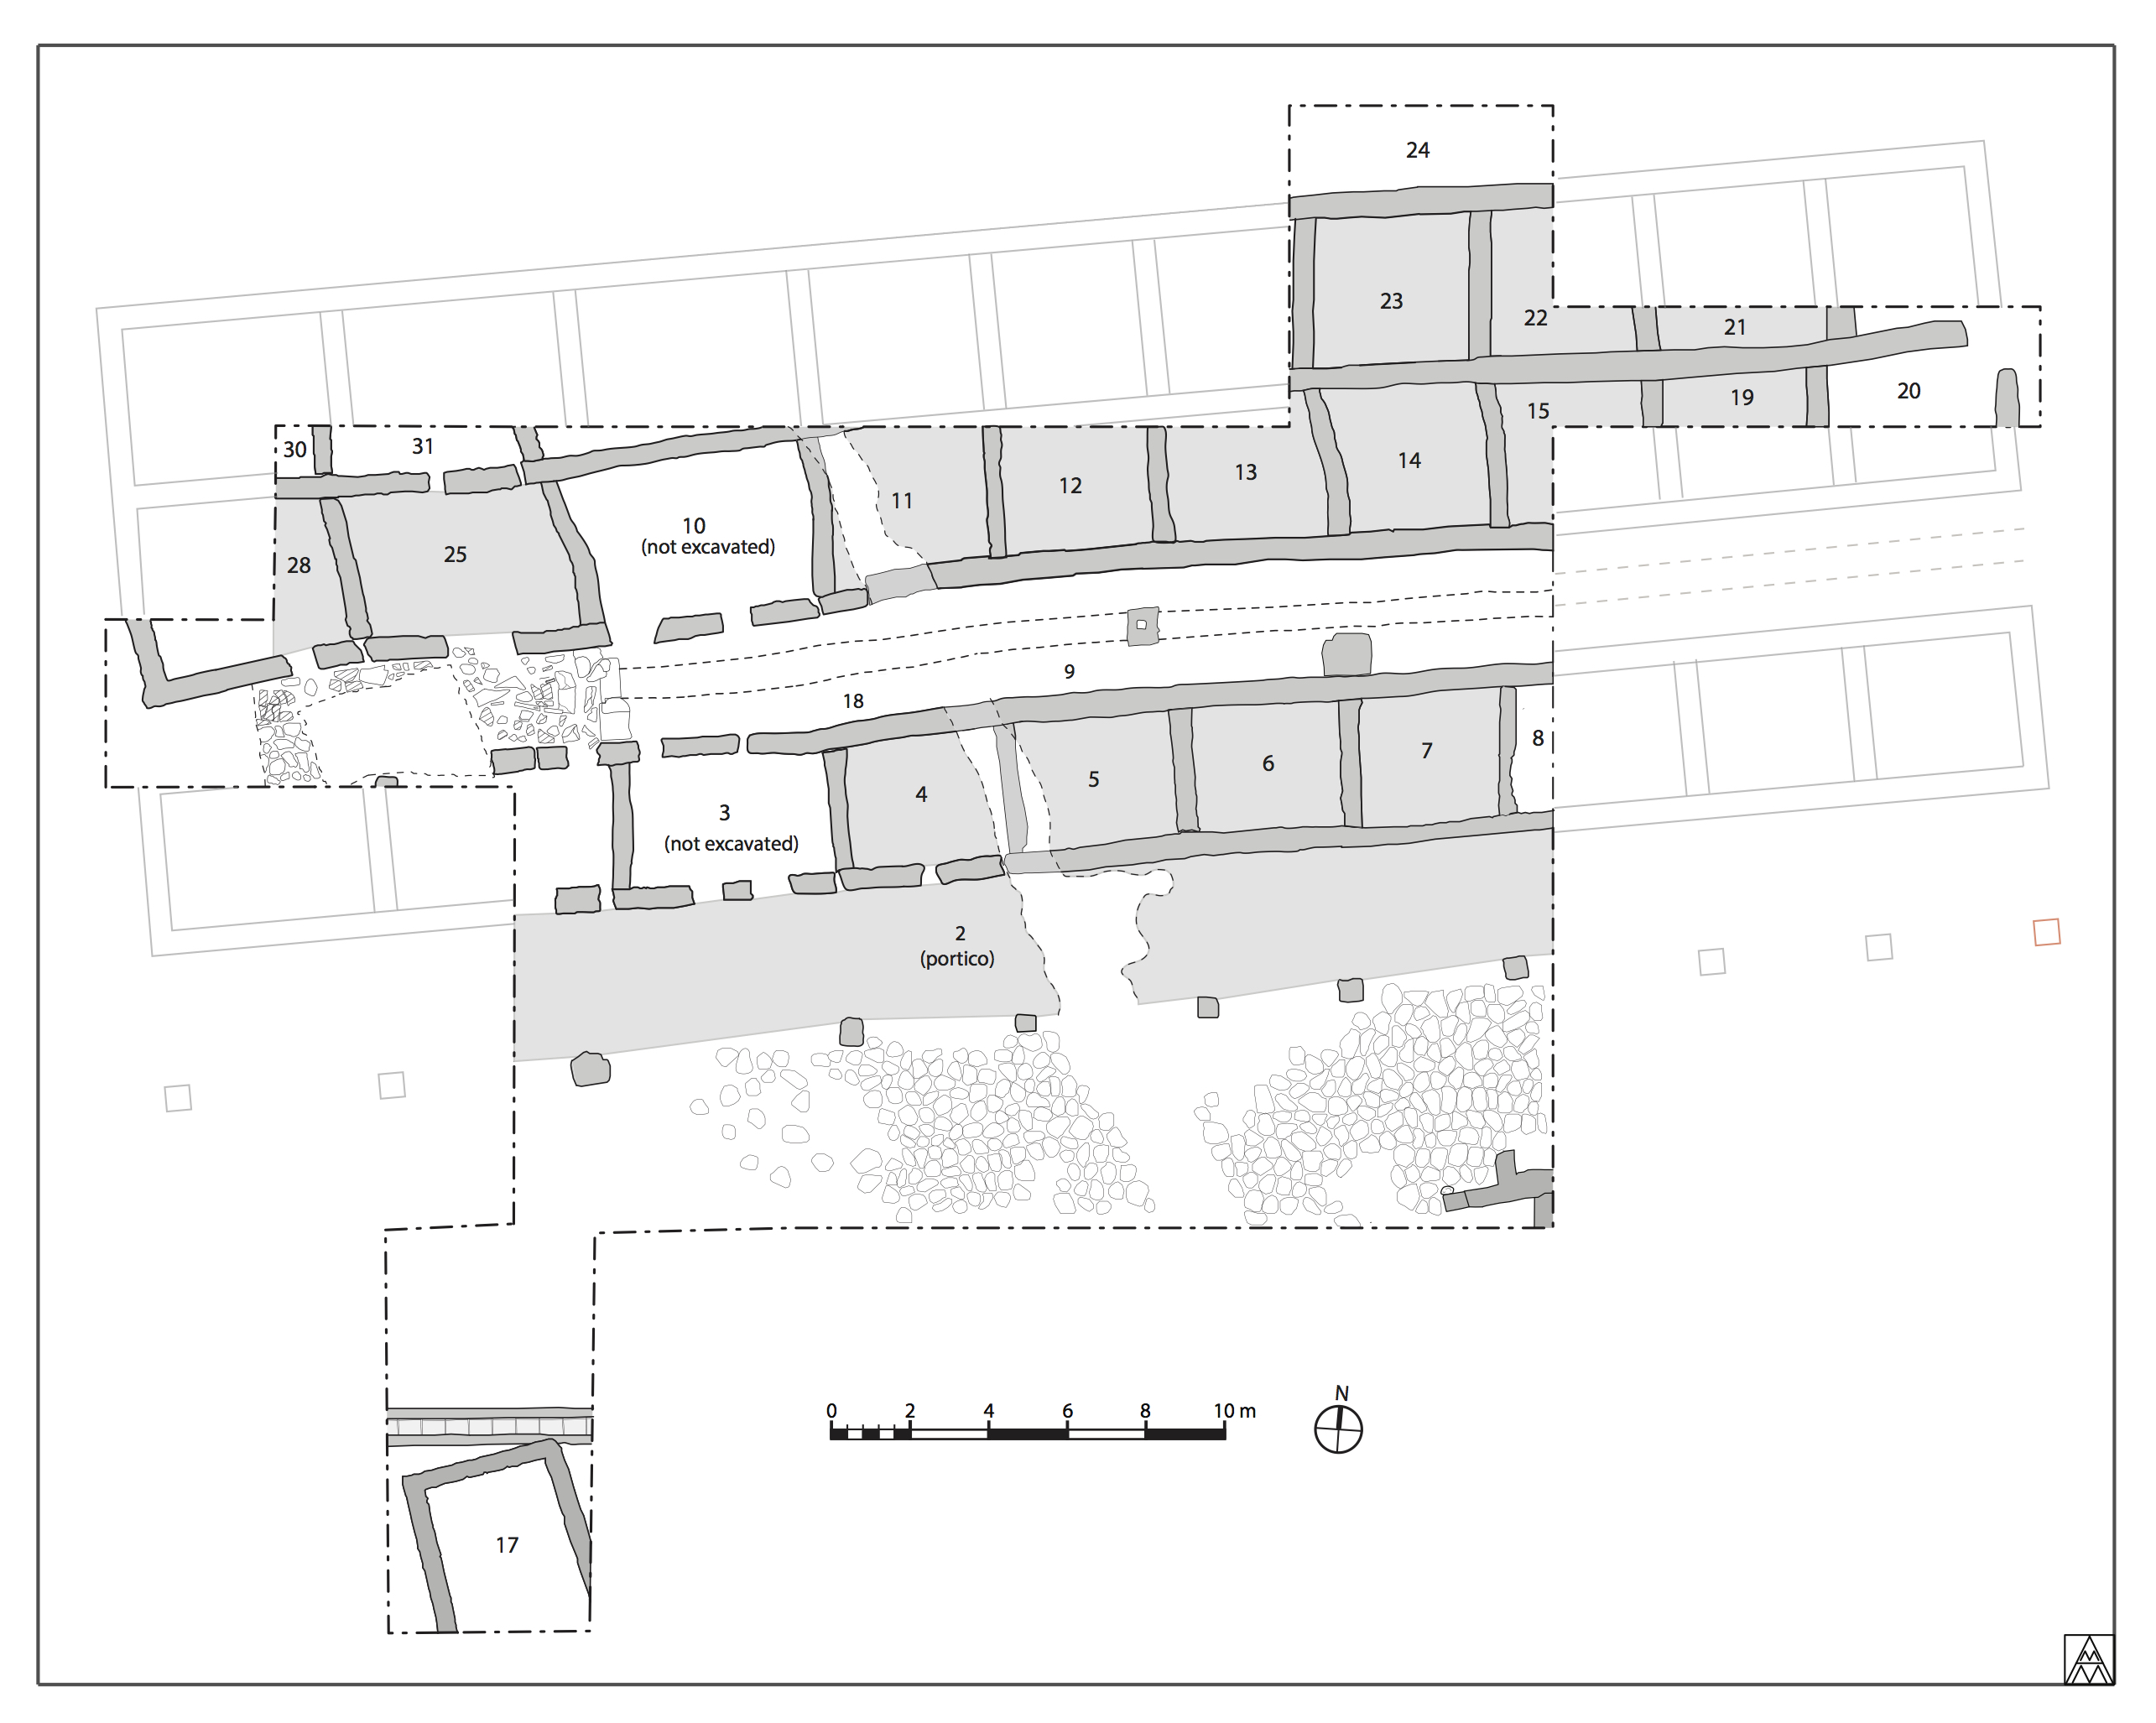 Figura 11. Pianta della struttura con la numerazione delle stanza (in nero) e la pianta originale proposta (in grigio) (Margaret Andrews).